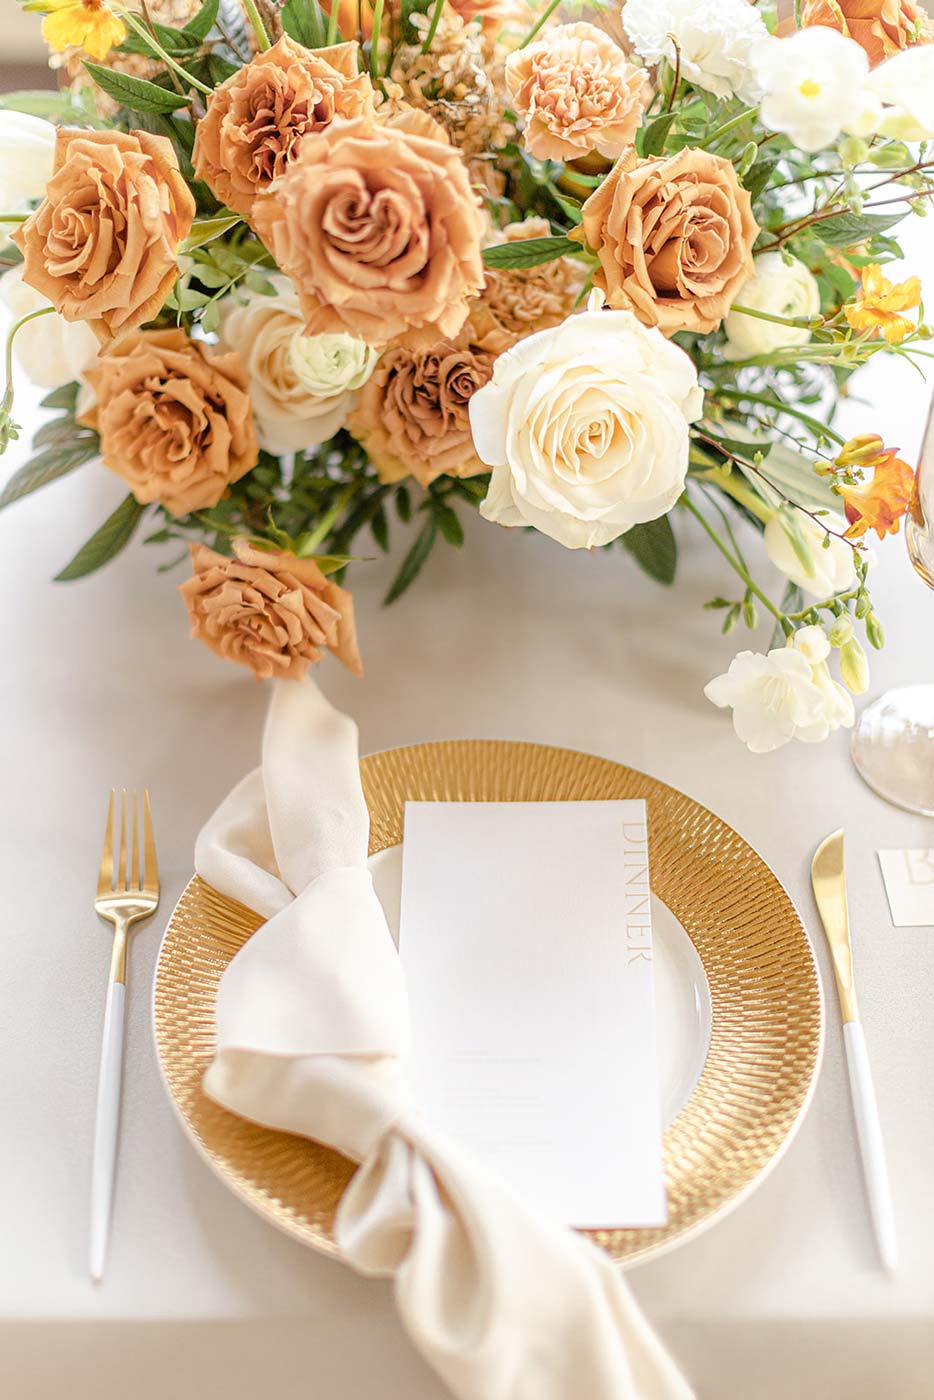 Moderne Menükarte liegt auf einem dekorierten Hochzeitstisch mit goldenem Teller und Besteck mit orangenen und weißen Rosen